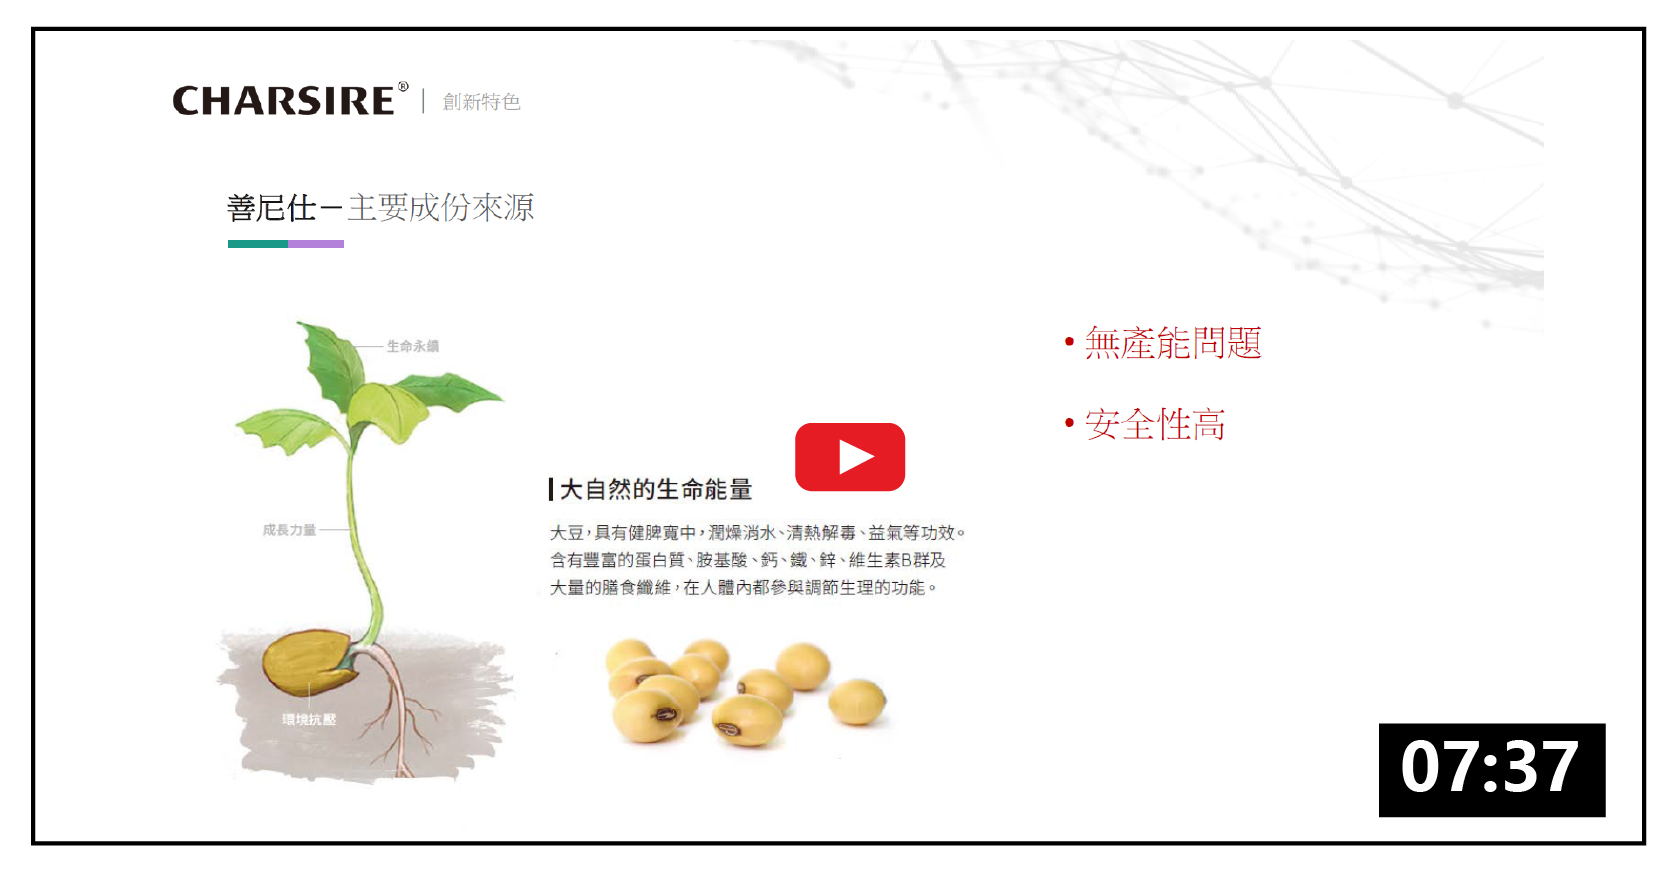 仕都莎善尼仕 - 專利製程「大豆萃取物」醫療器材創傷敷料